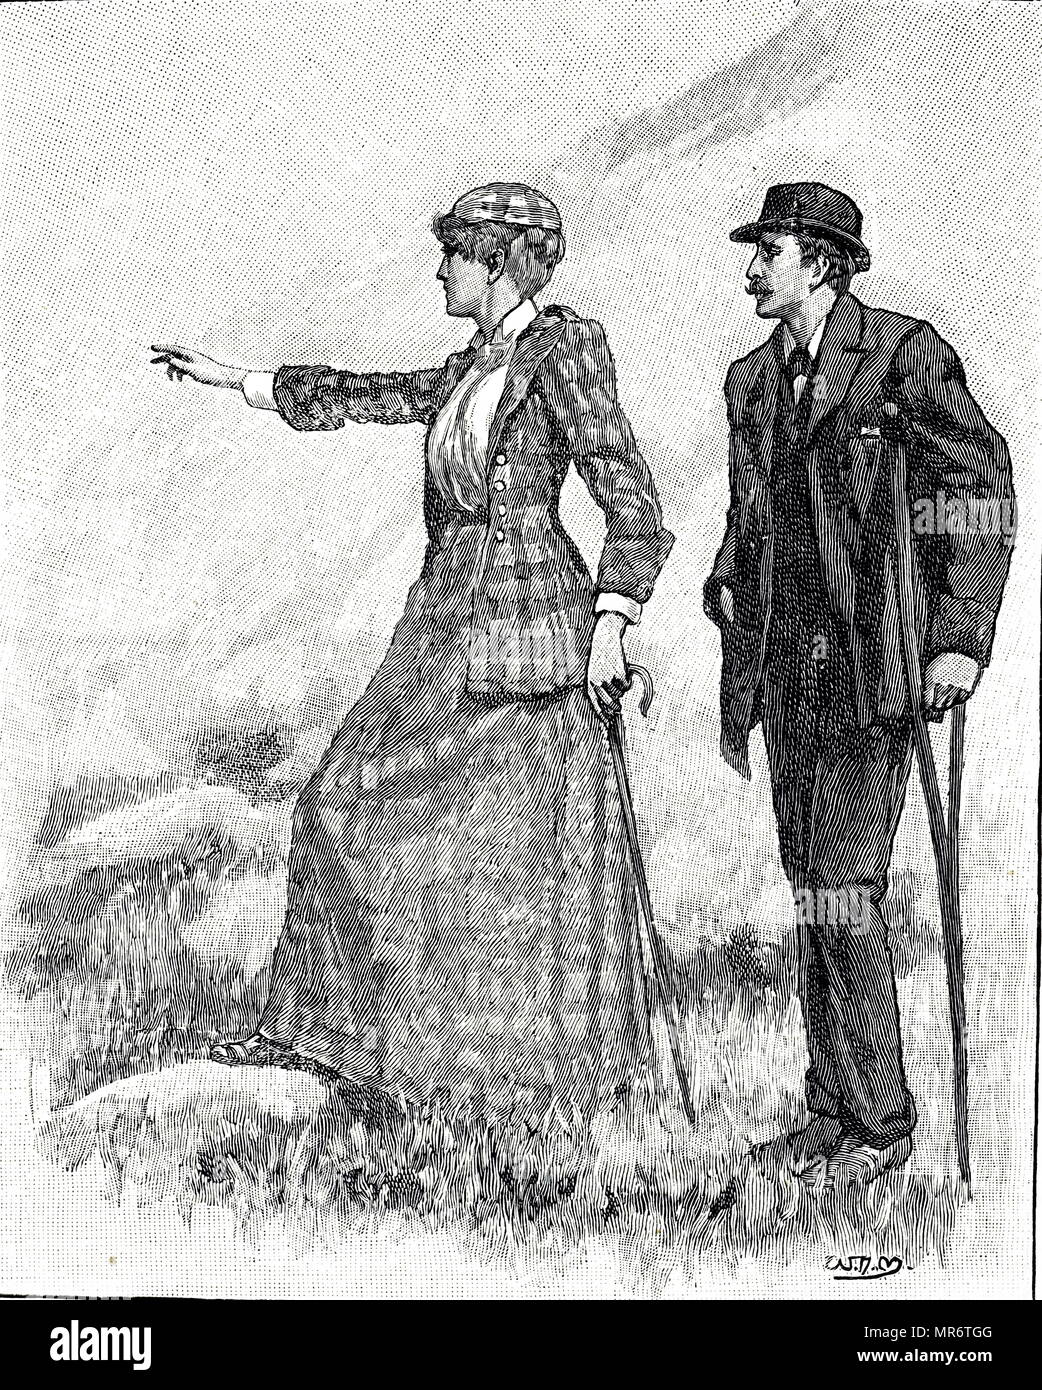 Gravur mit ein Paar durch die Landschaft spazieren zu gehen. Der Mann ist mit einer Krücke, um ihm zu helfen. Vom 19. Jahrhundert Stockfoto